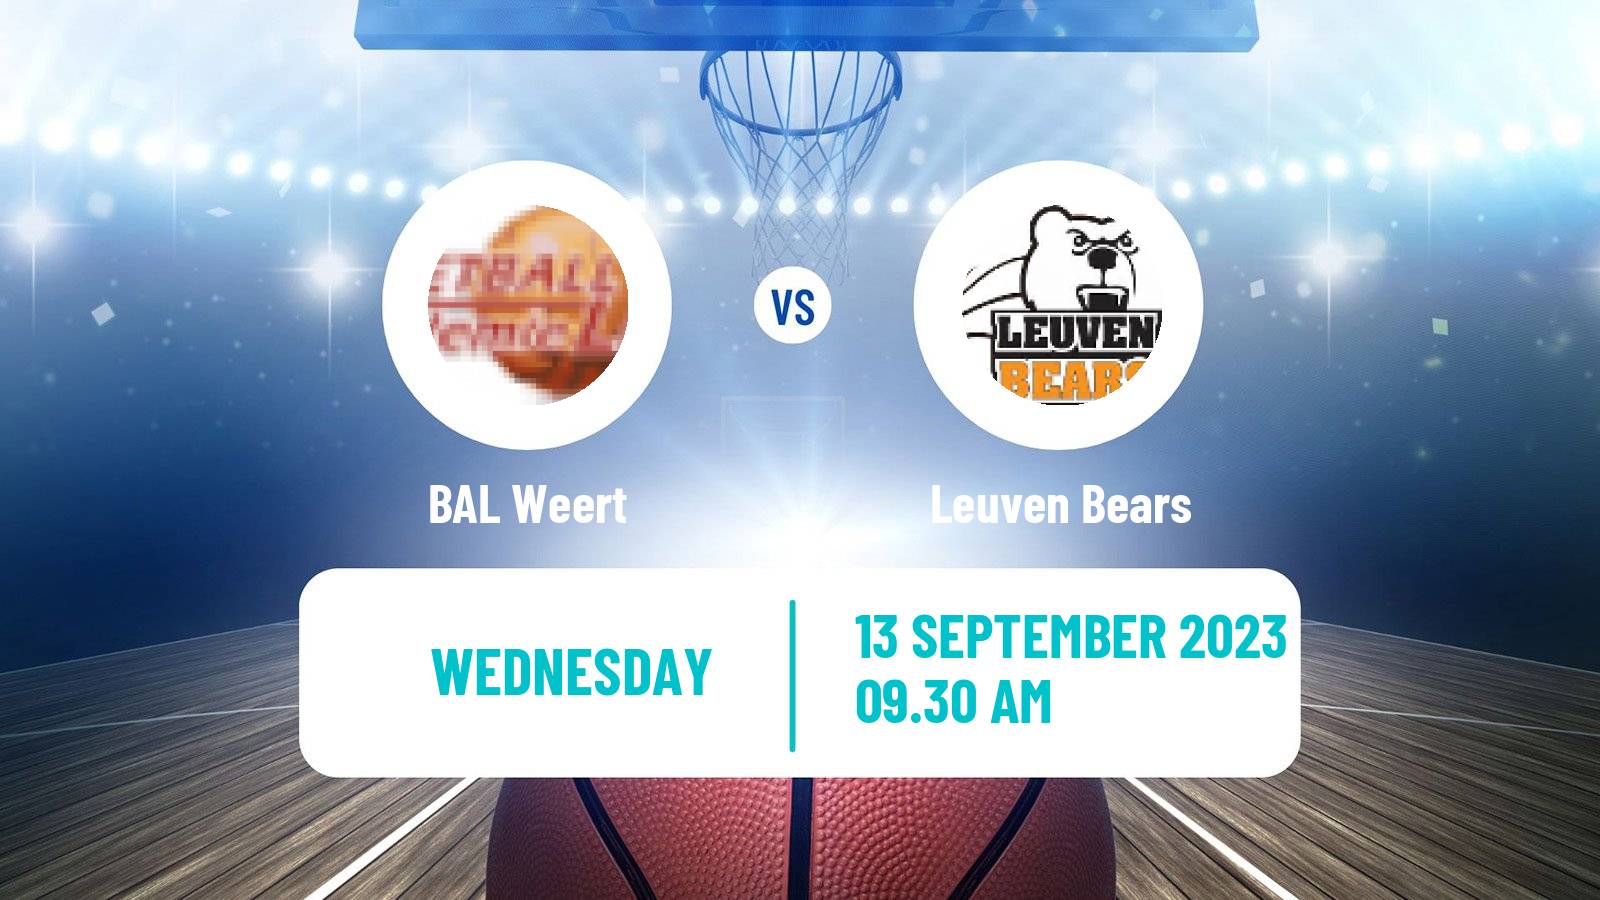 Basketball Club Friendly Basketball BAL Weert - Leuven Bears